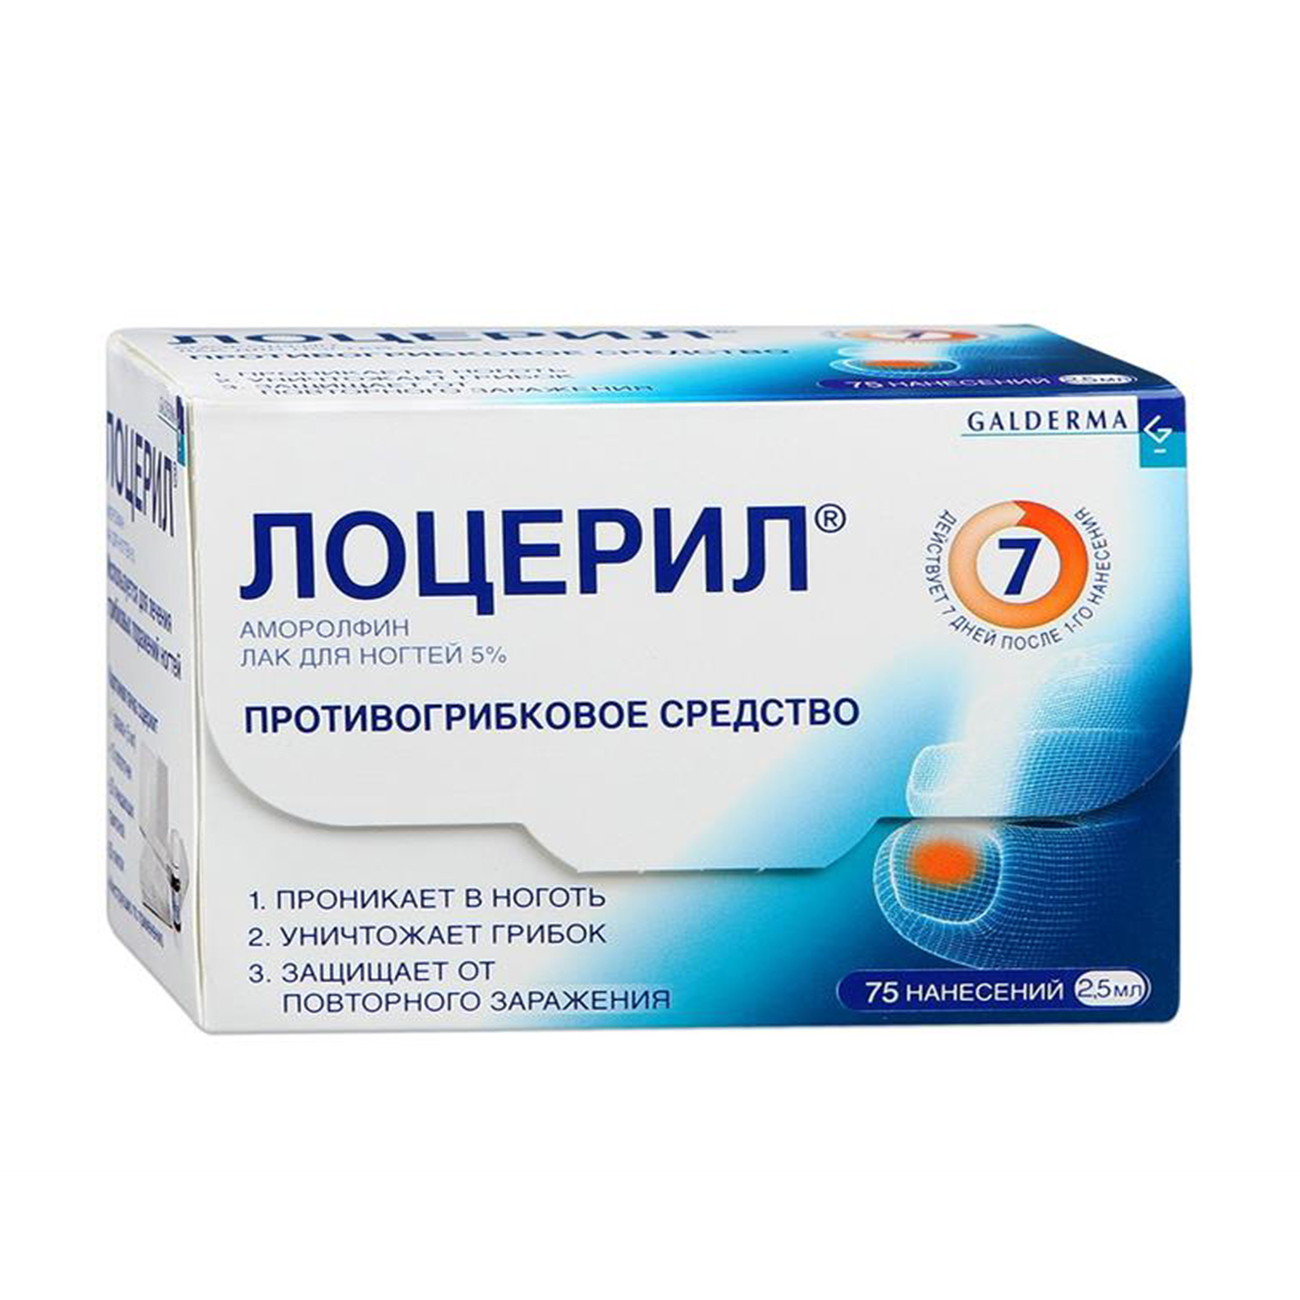 «аморолфин» от грибка: фармакологическое действие, формы выпуска и эффективность лечения